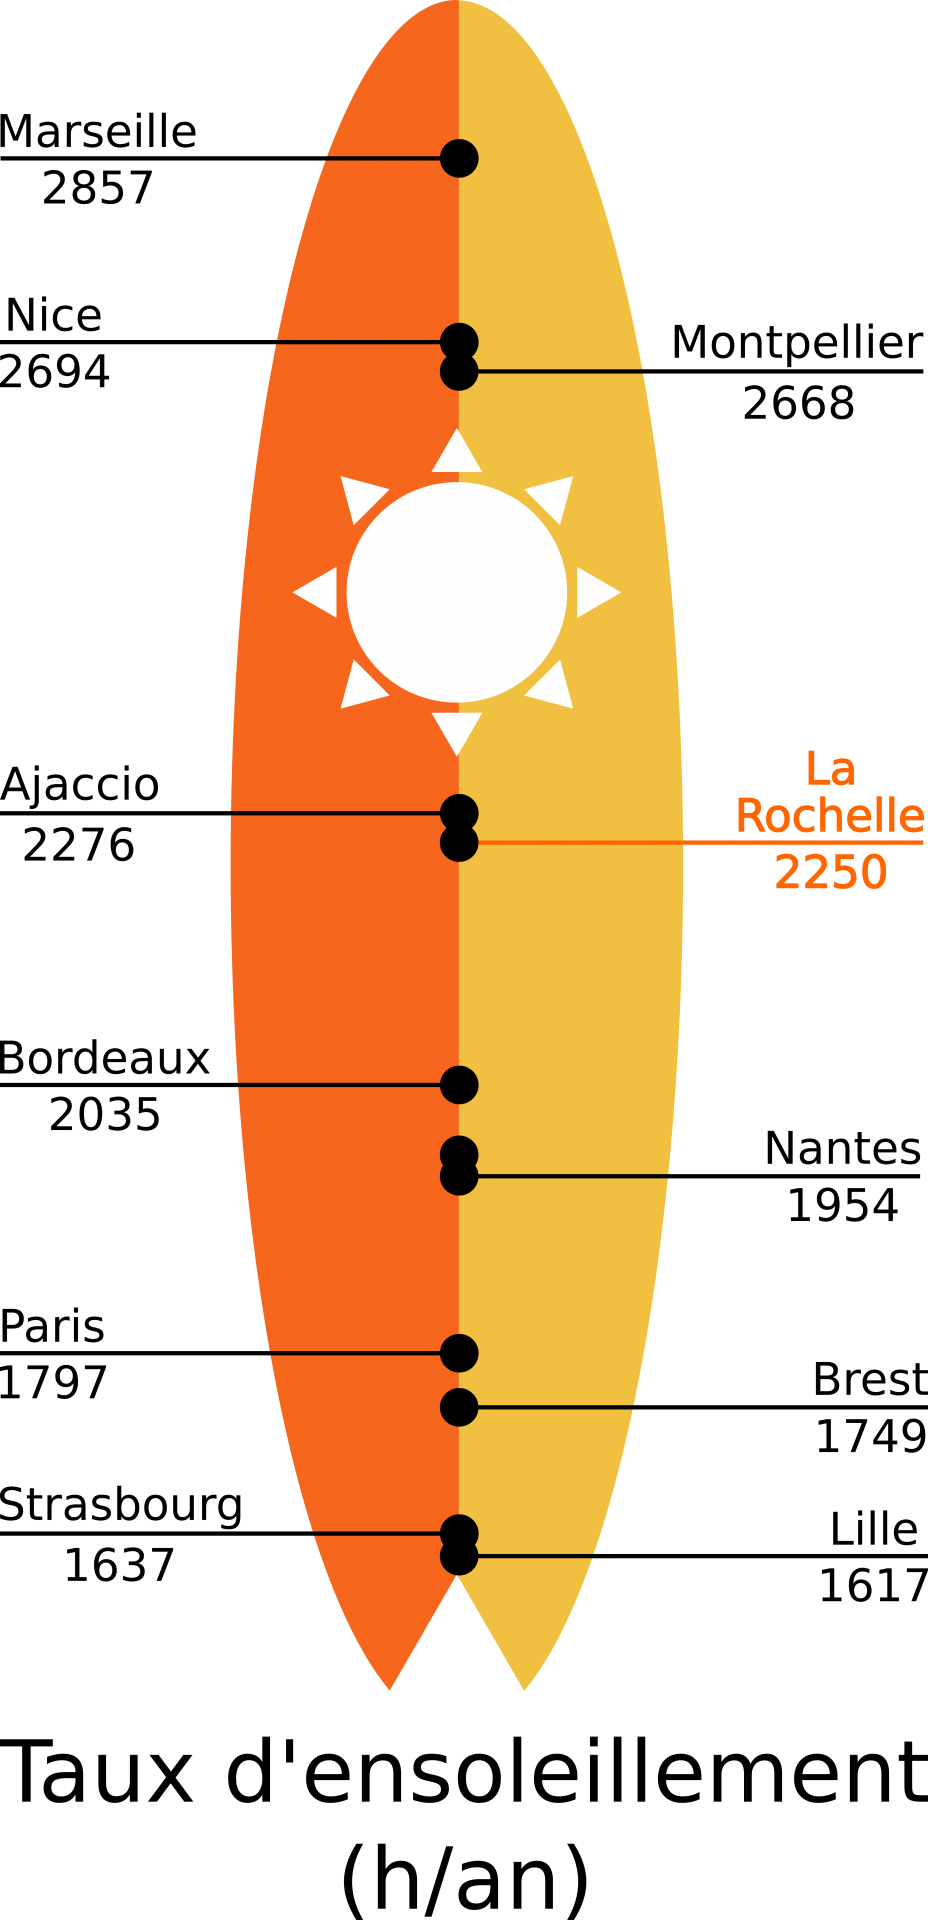 Micro climat La Rochelle